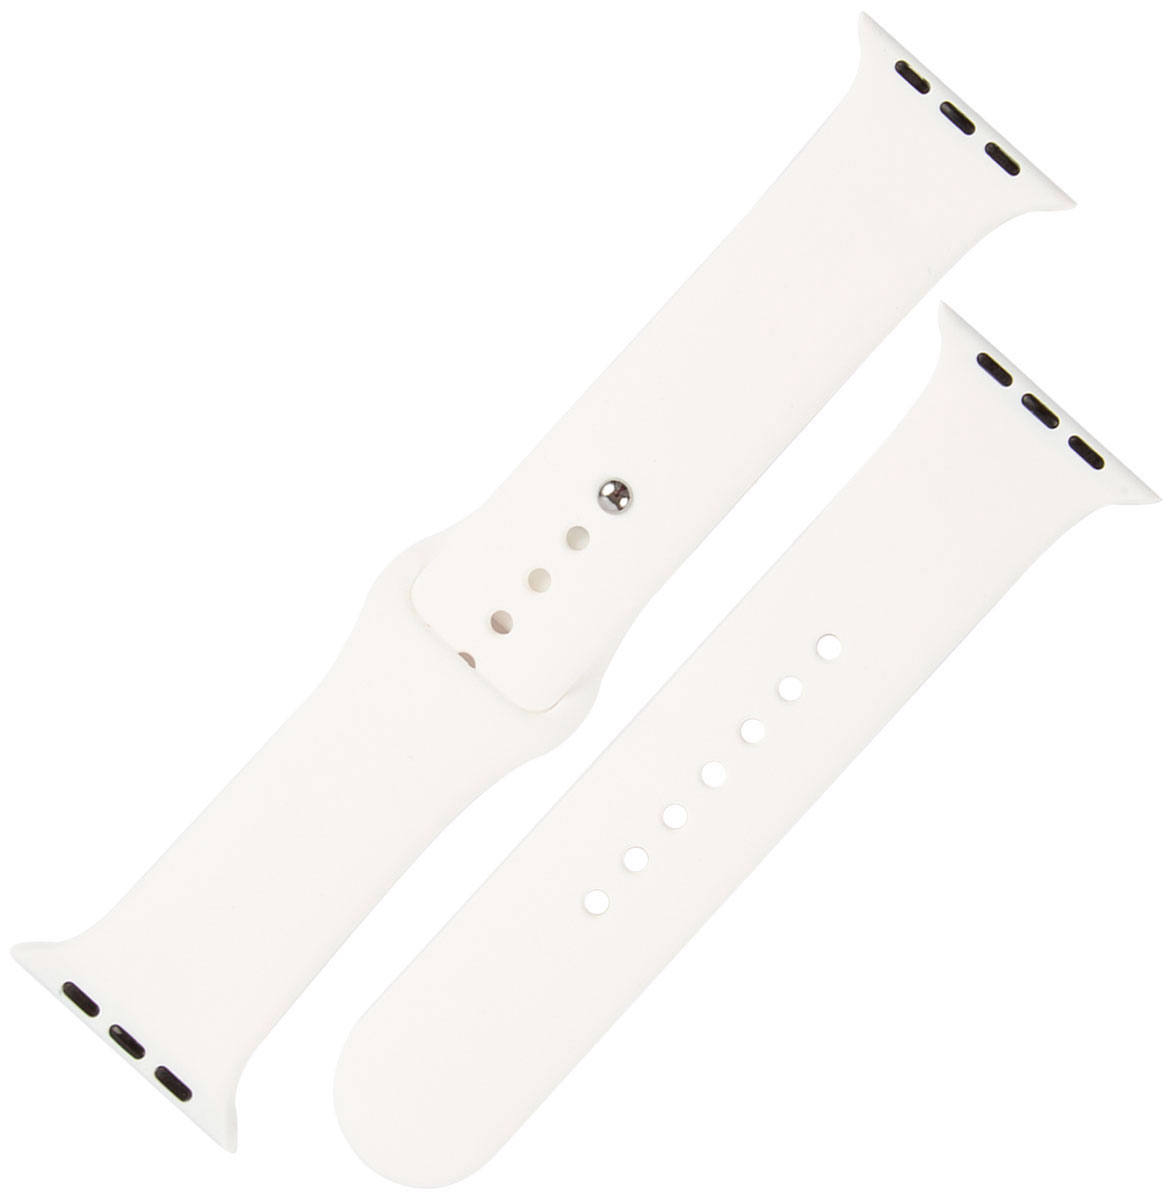 Ремешок силиконовый mObility для Apple watch – 42-44 мм (S3/S4/S5 SE/S6), белый ремешок силиконовый mobility для apple watch – 42 44 мм s3 s4 s5 se s6 зеленый